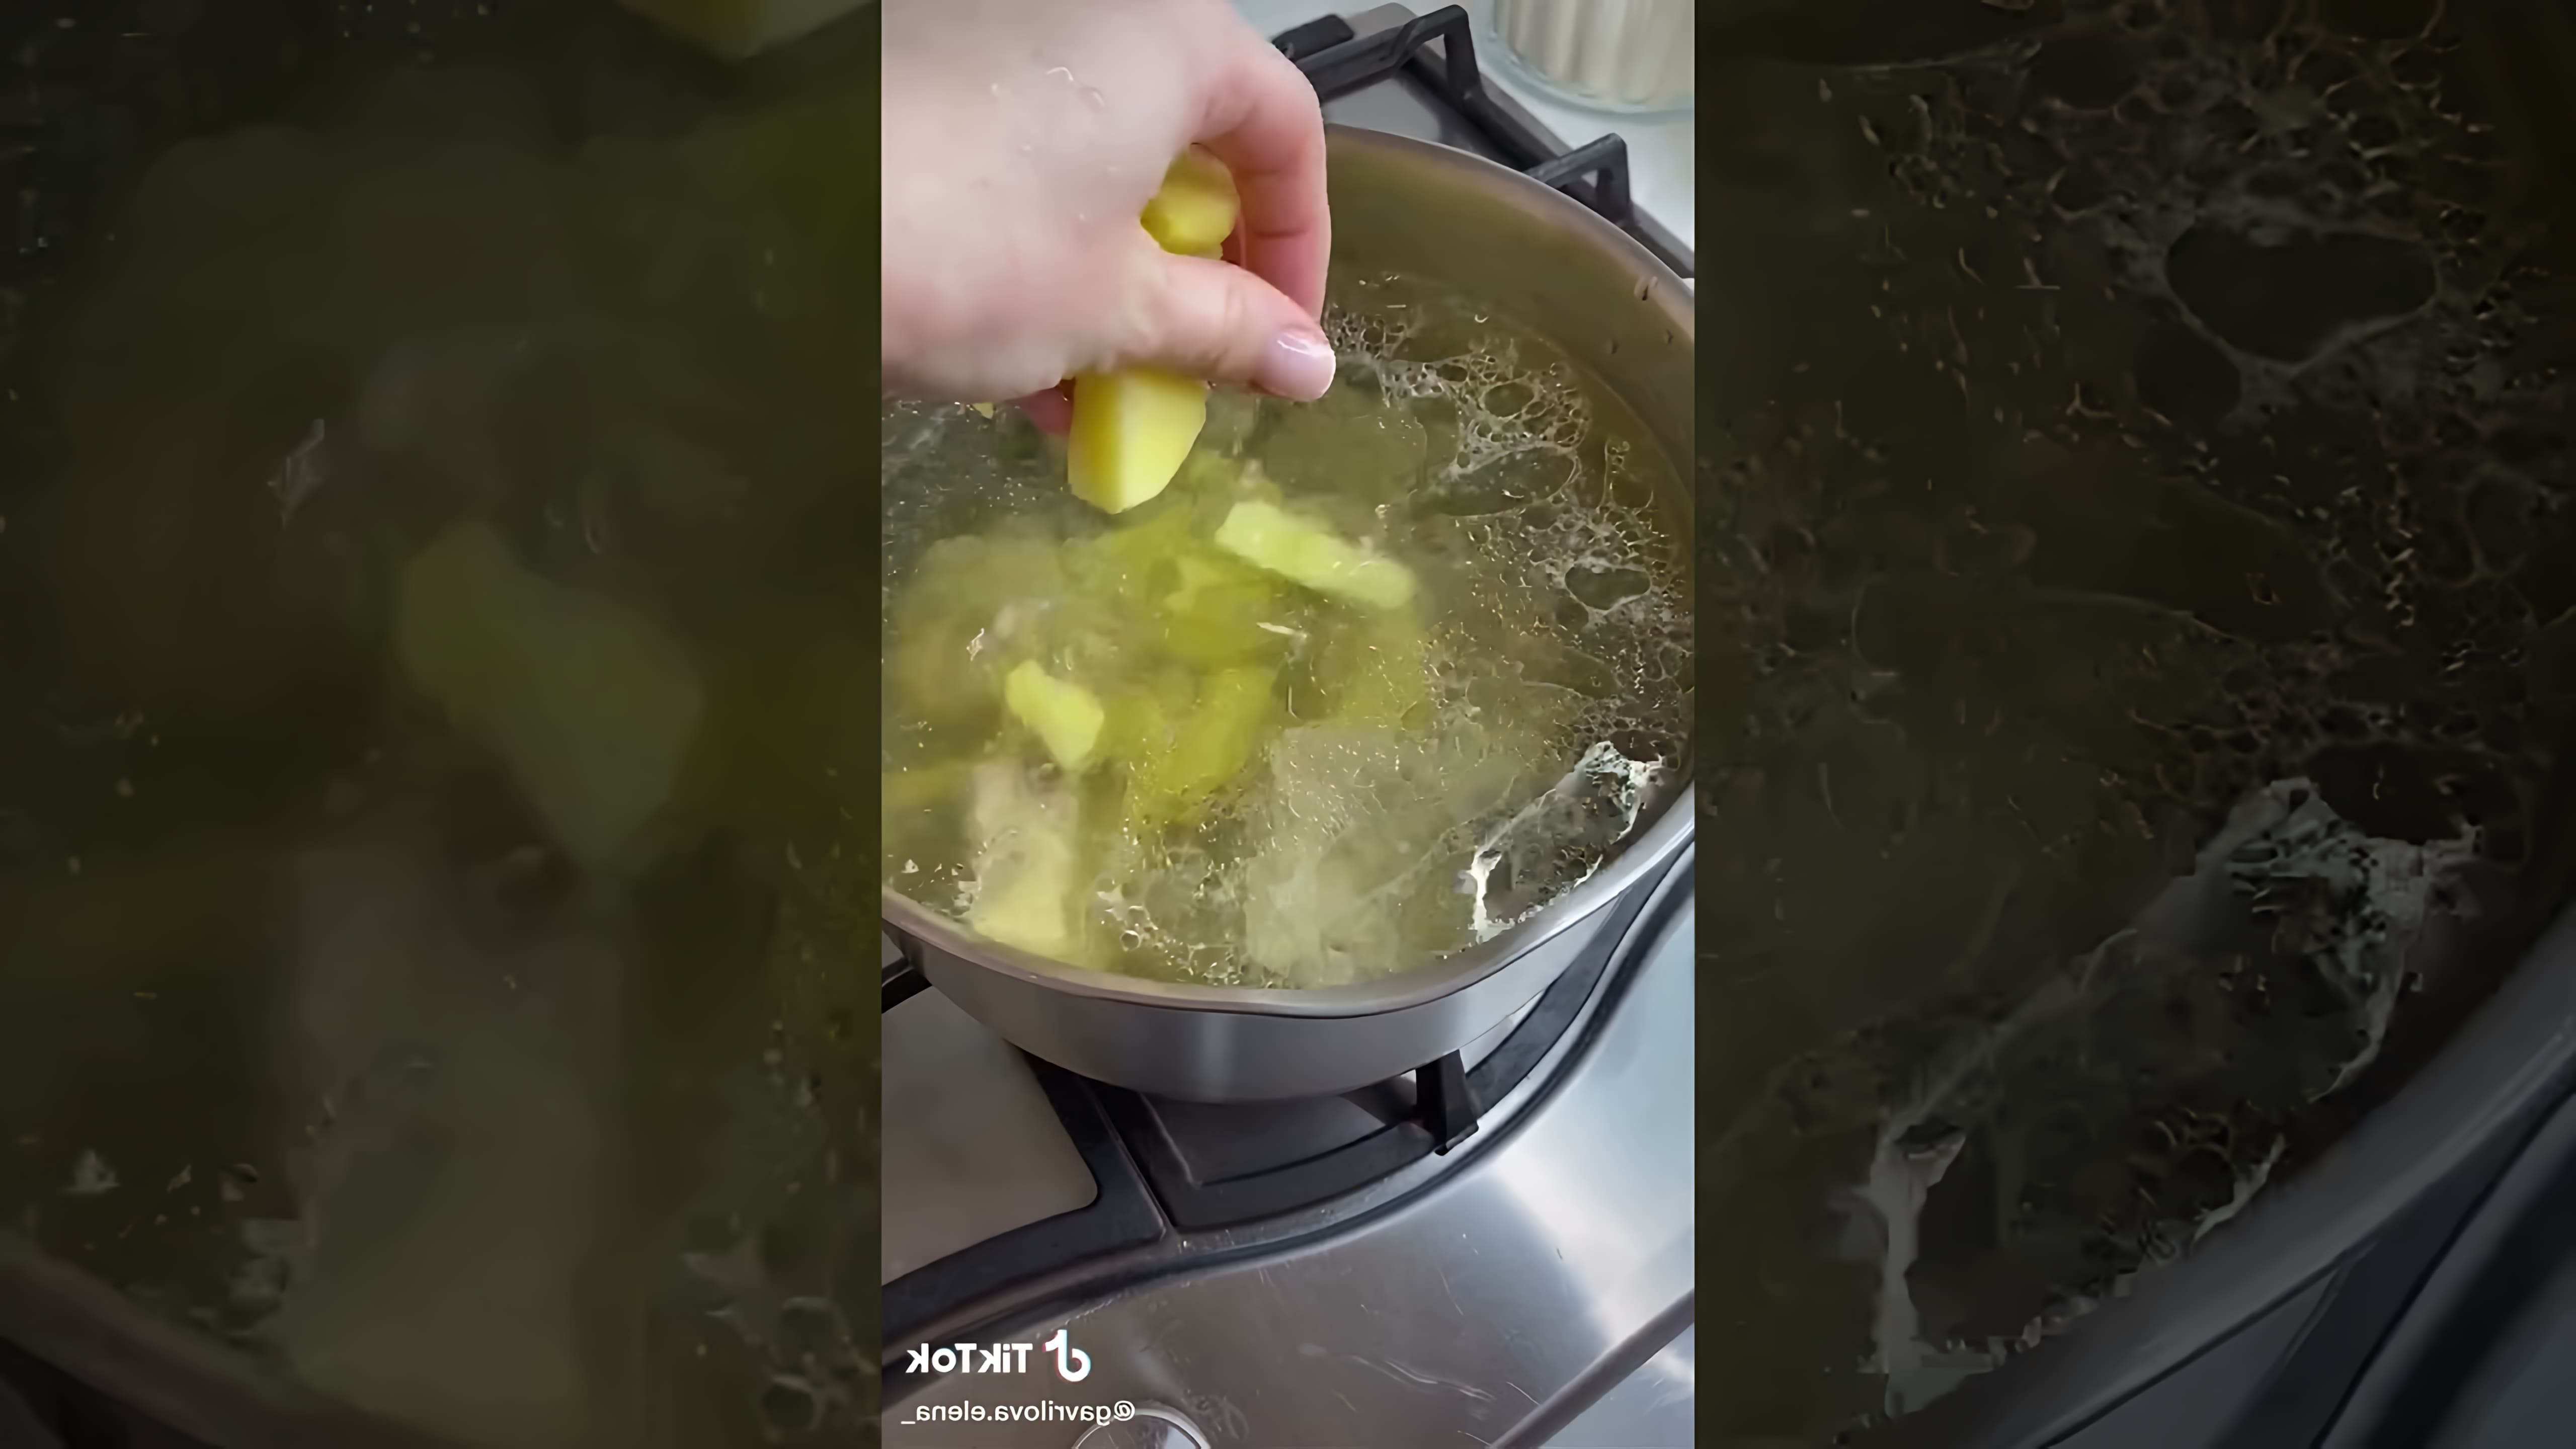 В этом видео демонстрируется рецепт приготовления борща